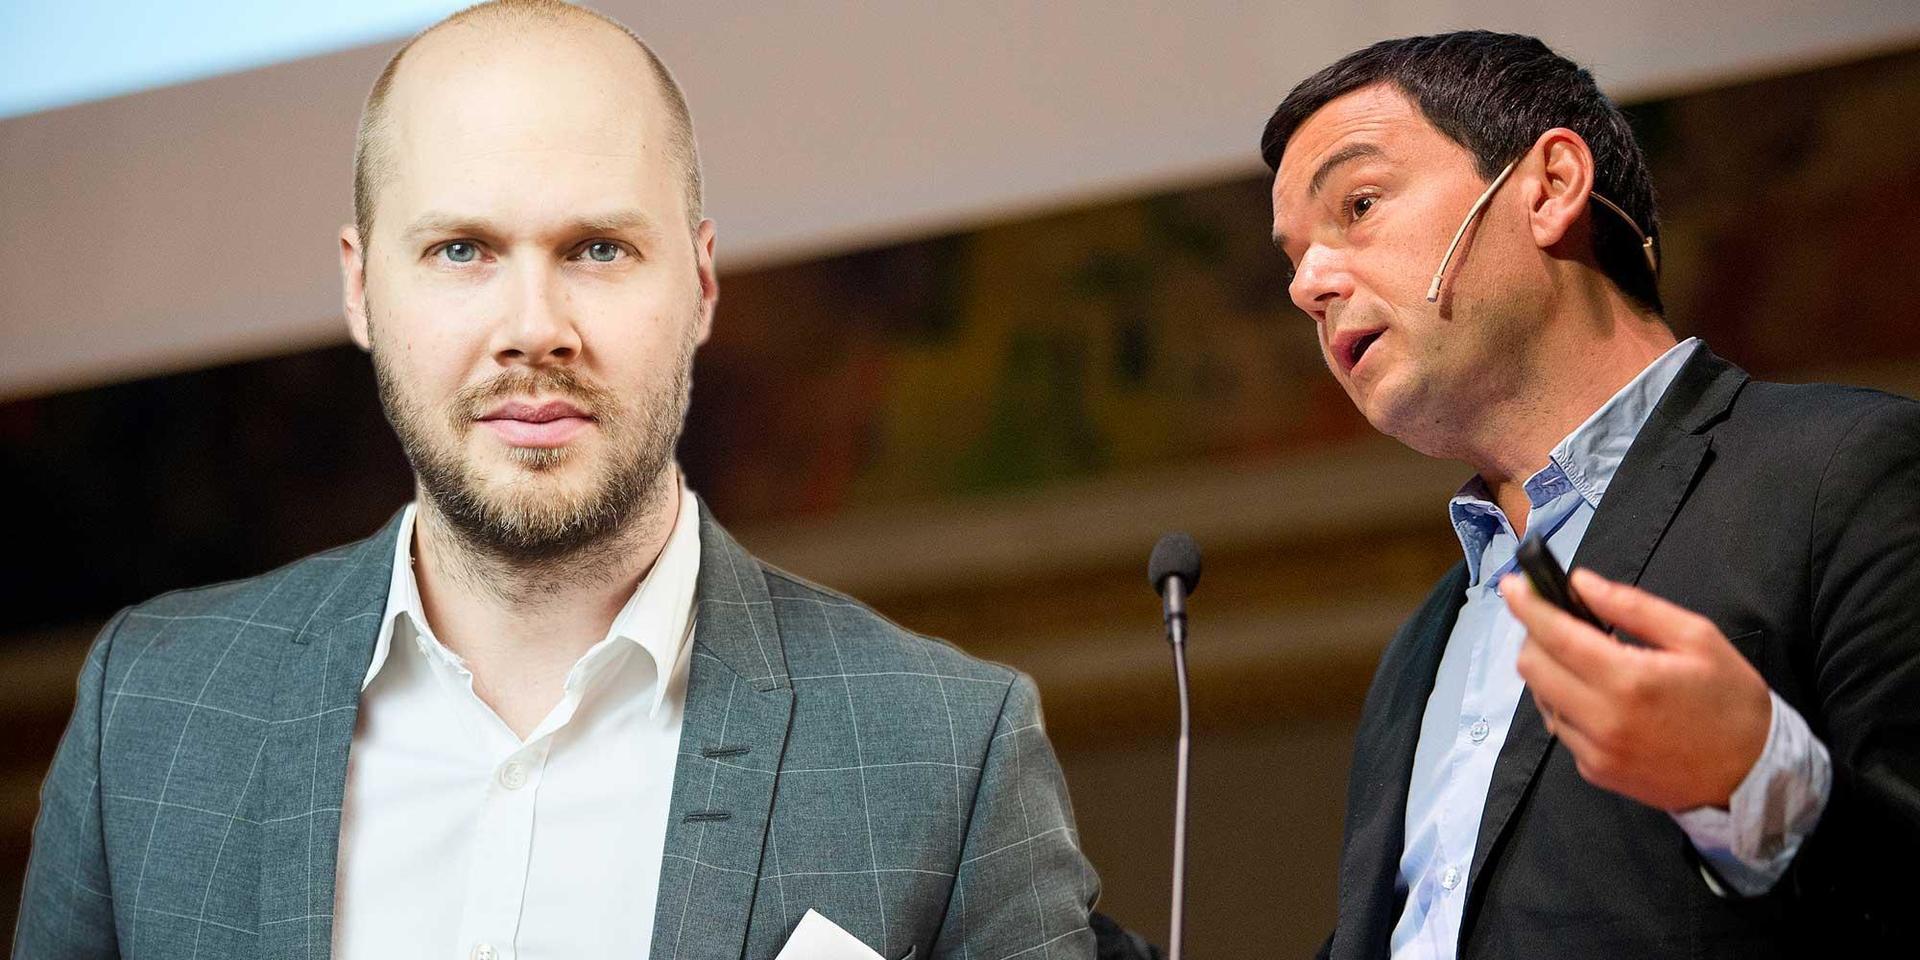 Den franske ekonomiprofessorn Thomas Piketty kräver jämlikhetsreformer ihop med svenska S-studenter.